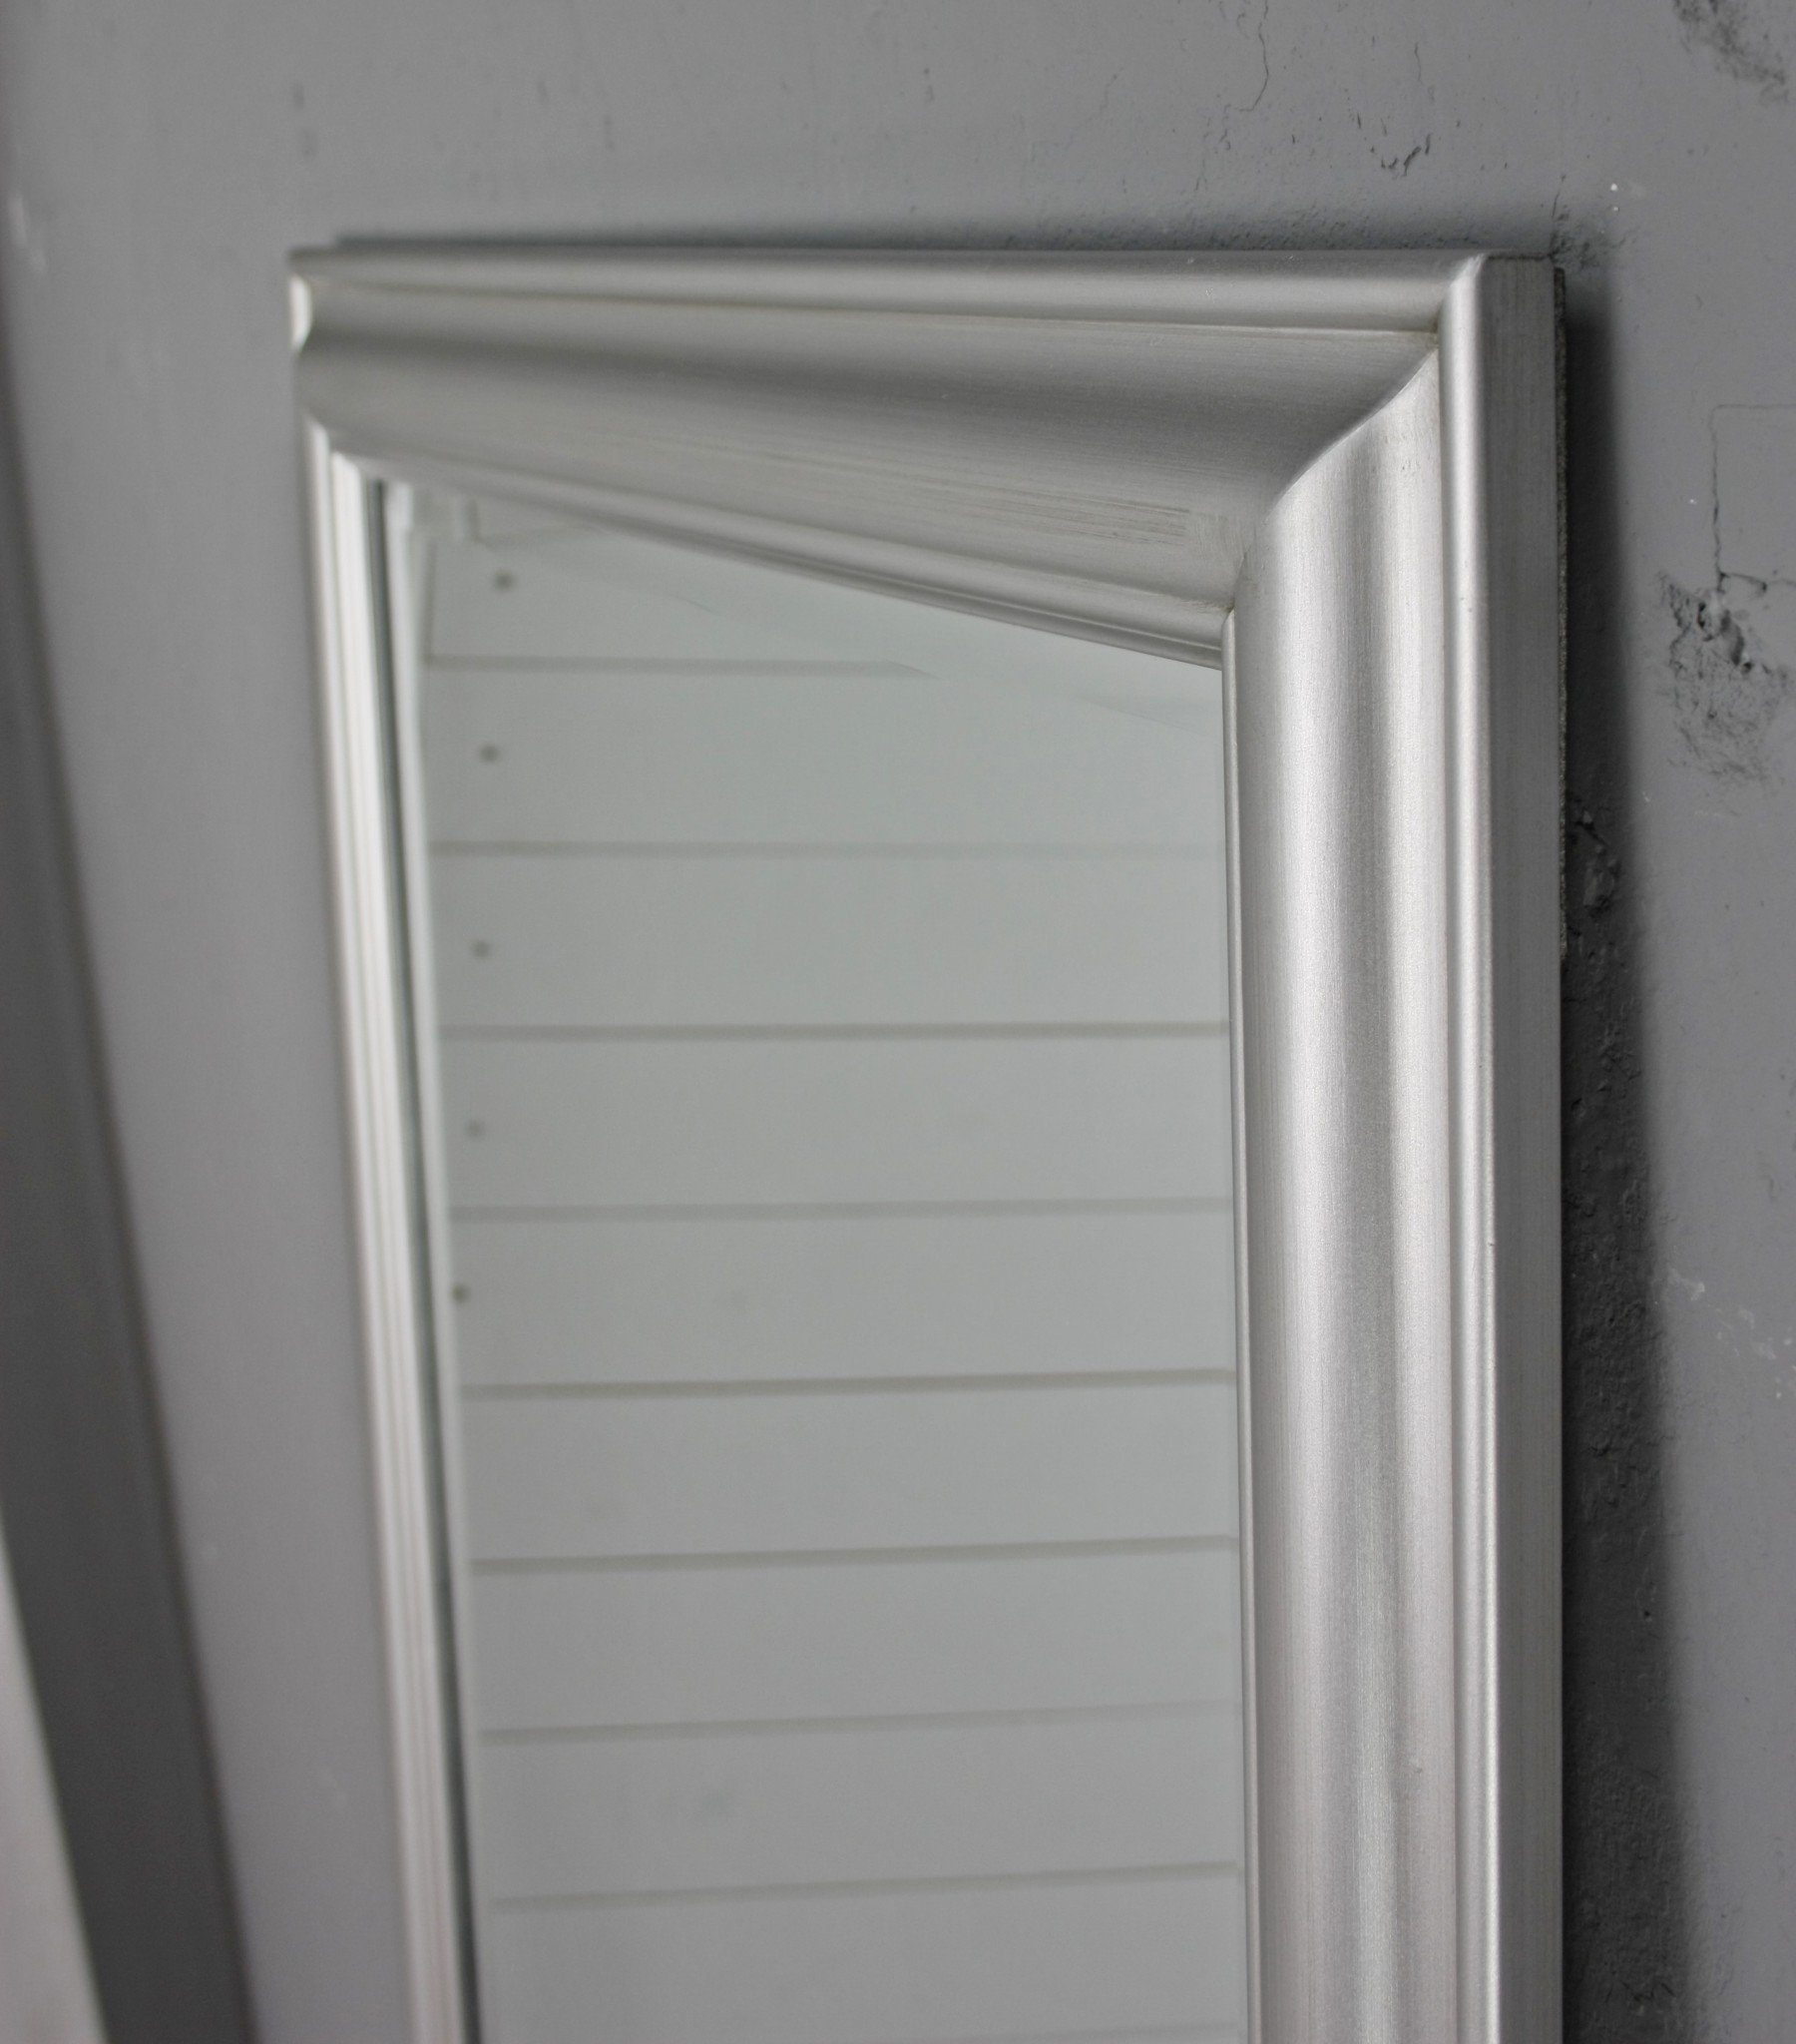 150cm, Wandspiegel Landhausstil silber klassischer elbmöbel 150x60x7 silber schlicht Spiegel: Spiegel Wandspiegel